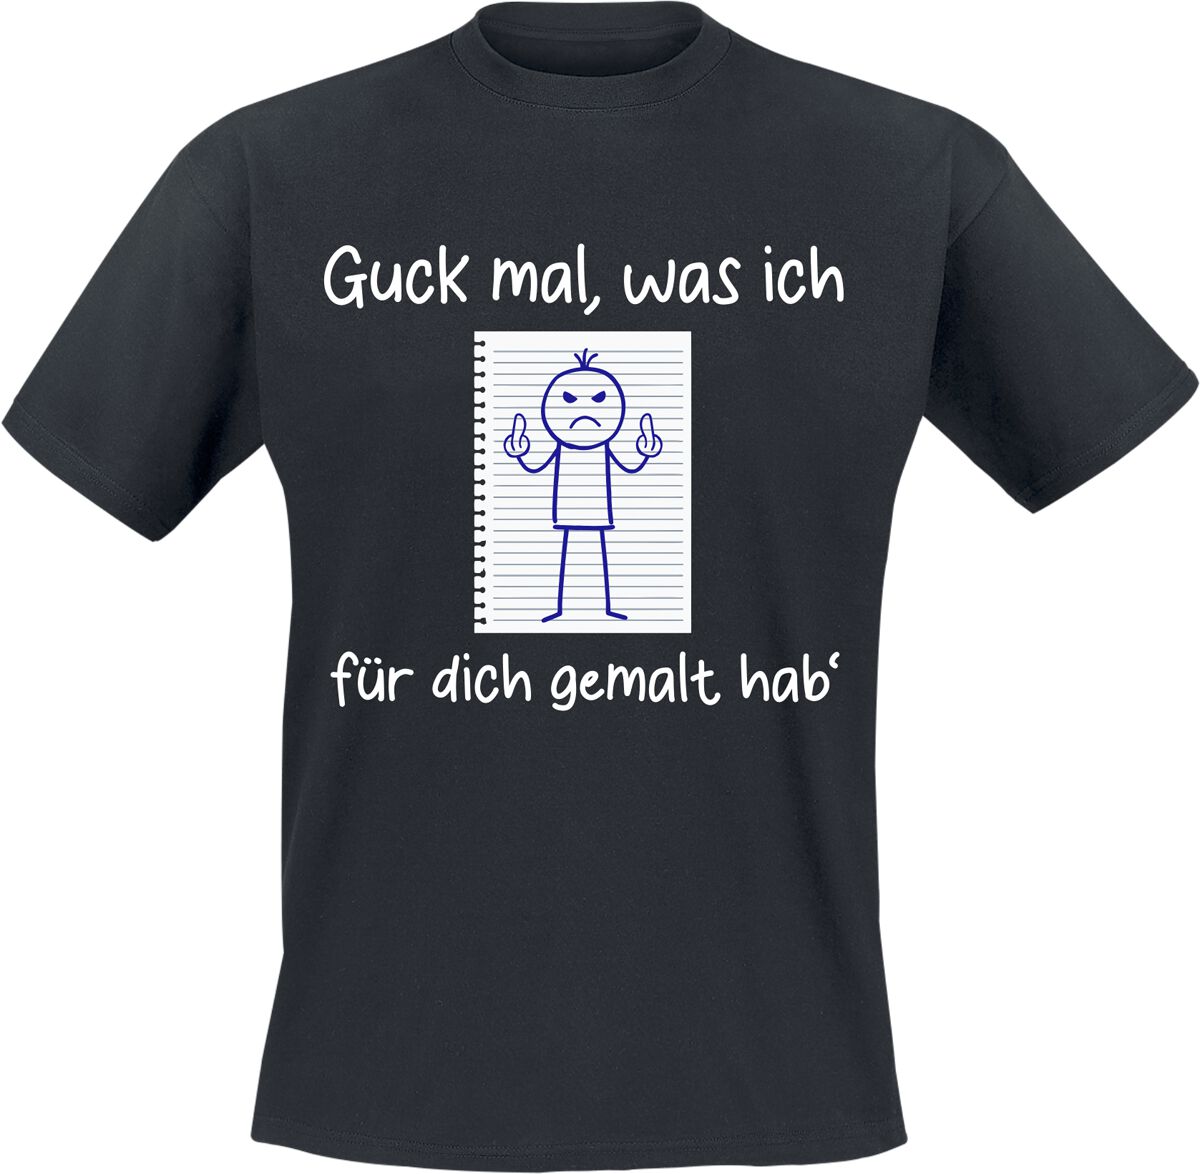 Funshirt T-Shirt - Guck mal, was ich für dich gemalt hab` - M bis XXL - für Männer - Größe XXL - schwarz